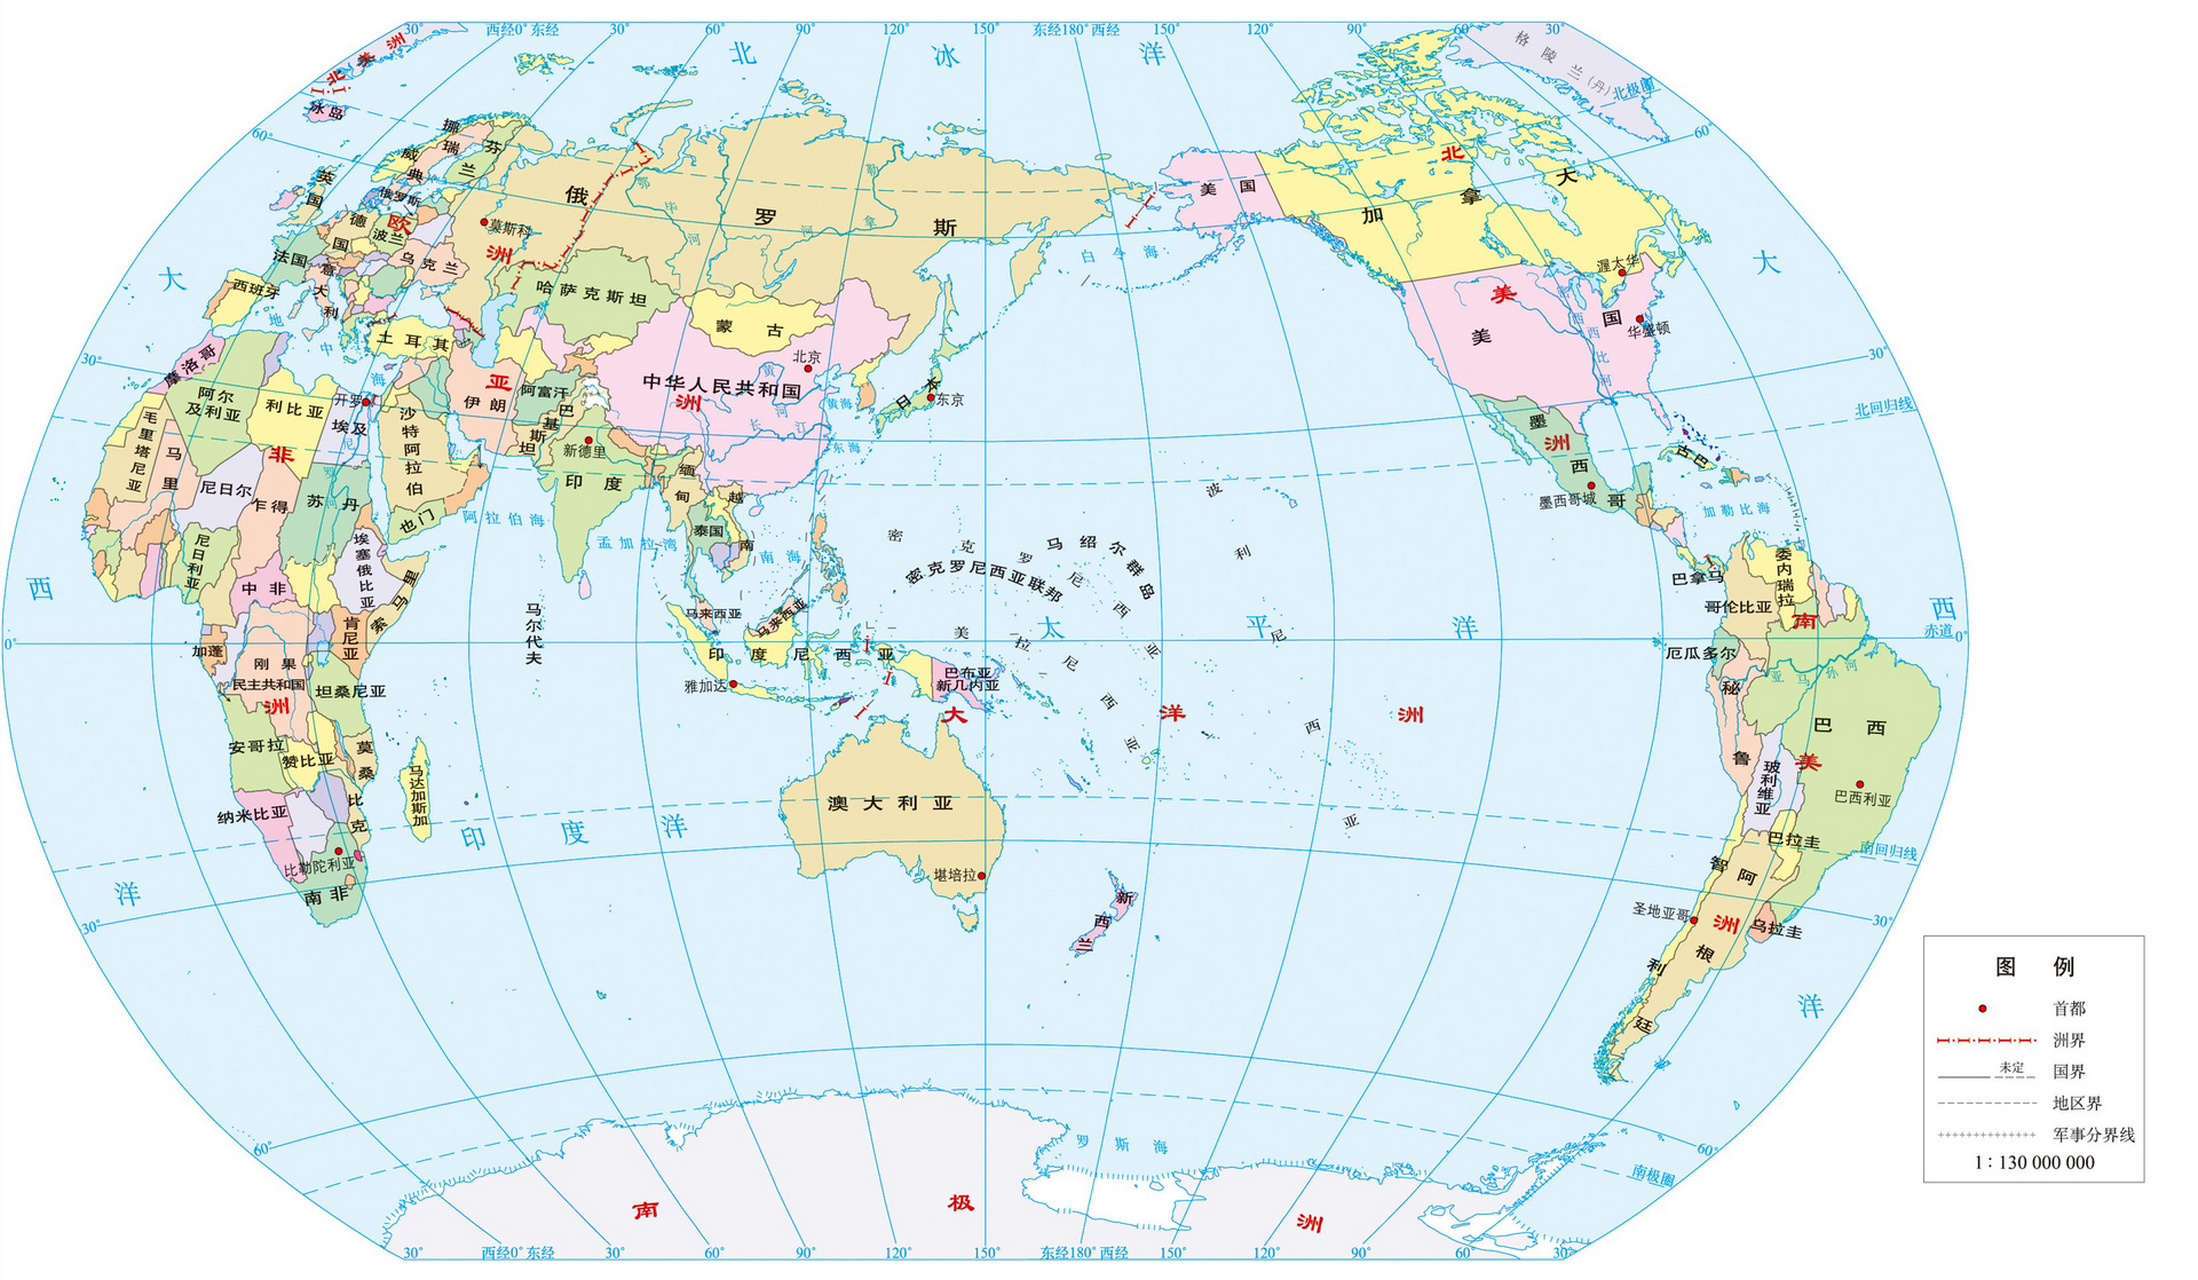 世界各国领陆面积排名 世界各国领陆面积排名 世界各国(不含水域,殖民